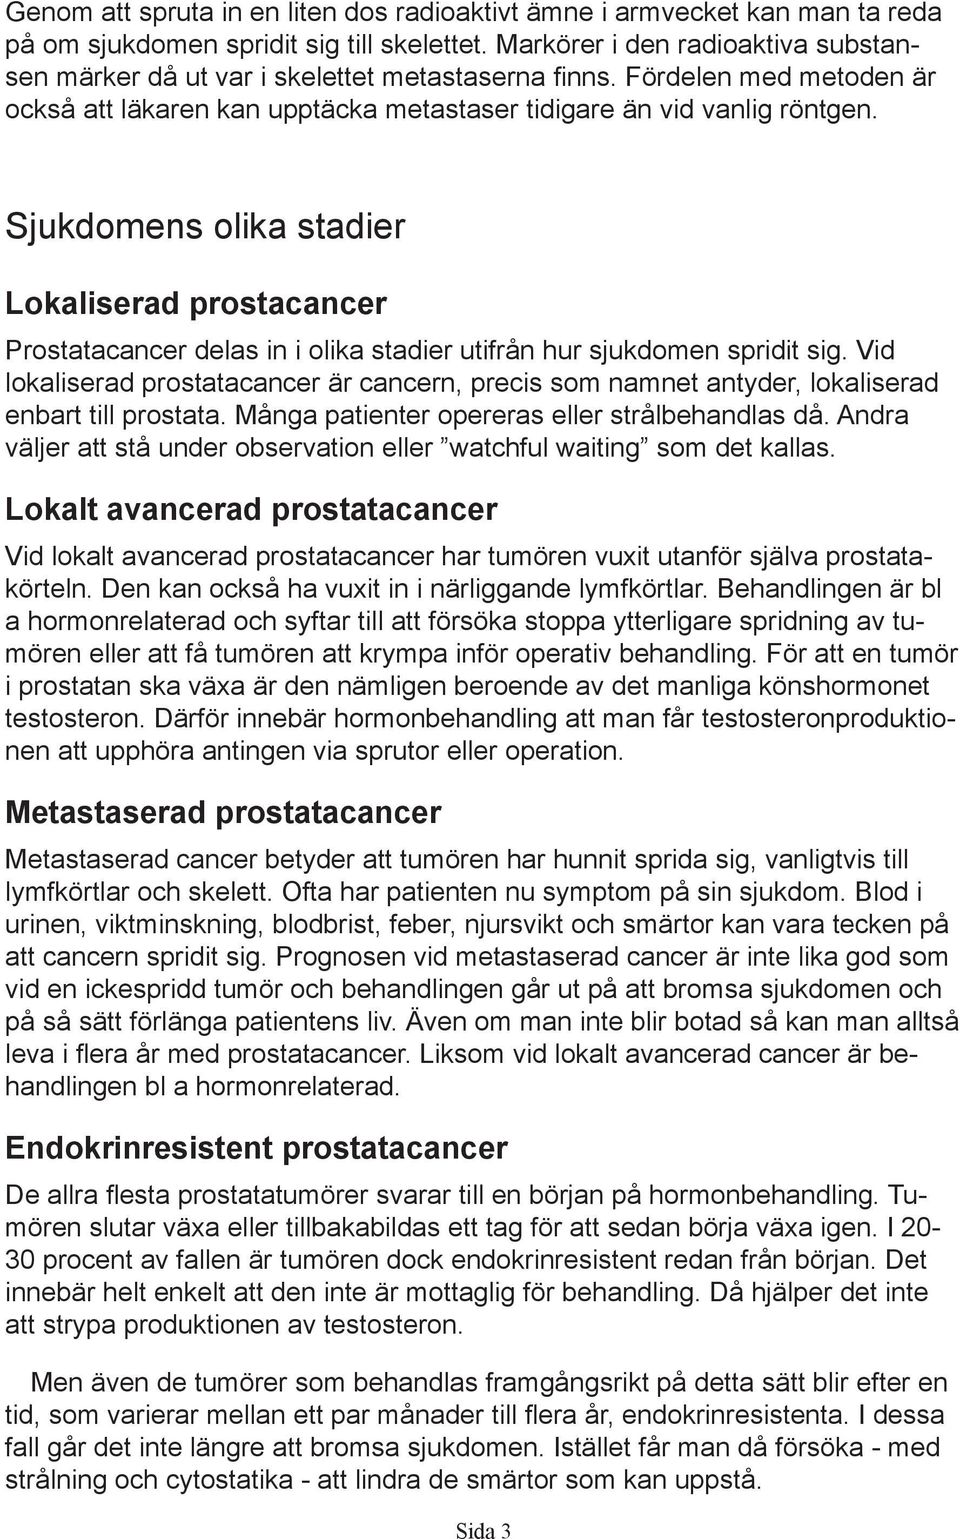 Sjukdomens olika stadier Lokaliserad prostacancer Prostatacancer delas in i olika stadier utifrån hur sjukdomen spridit sig.